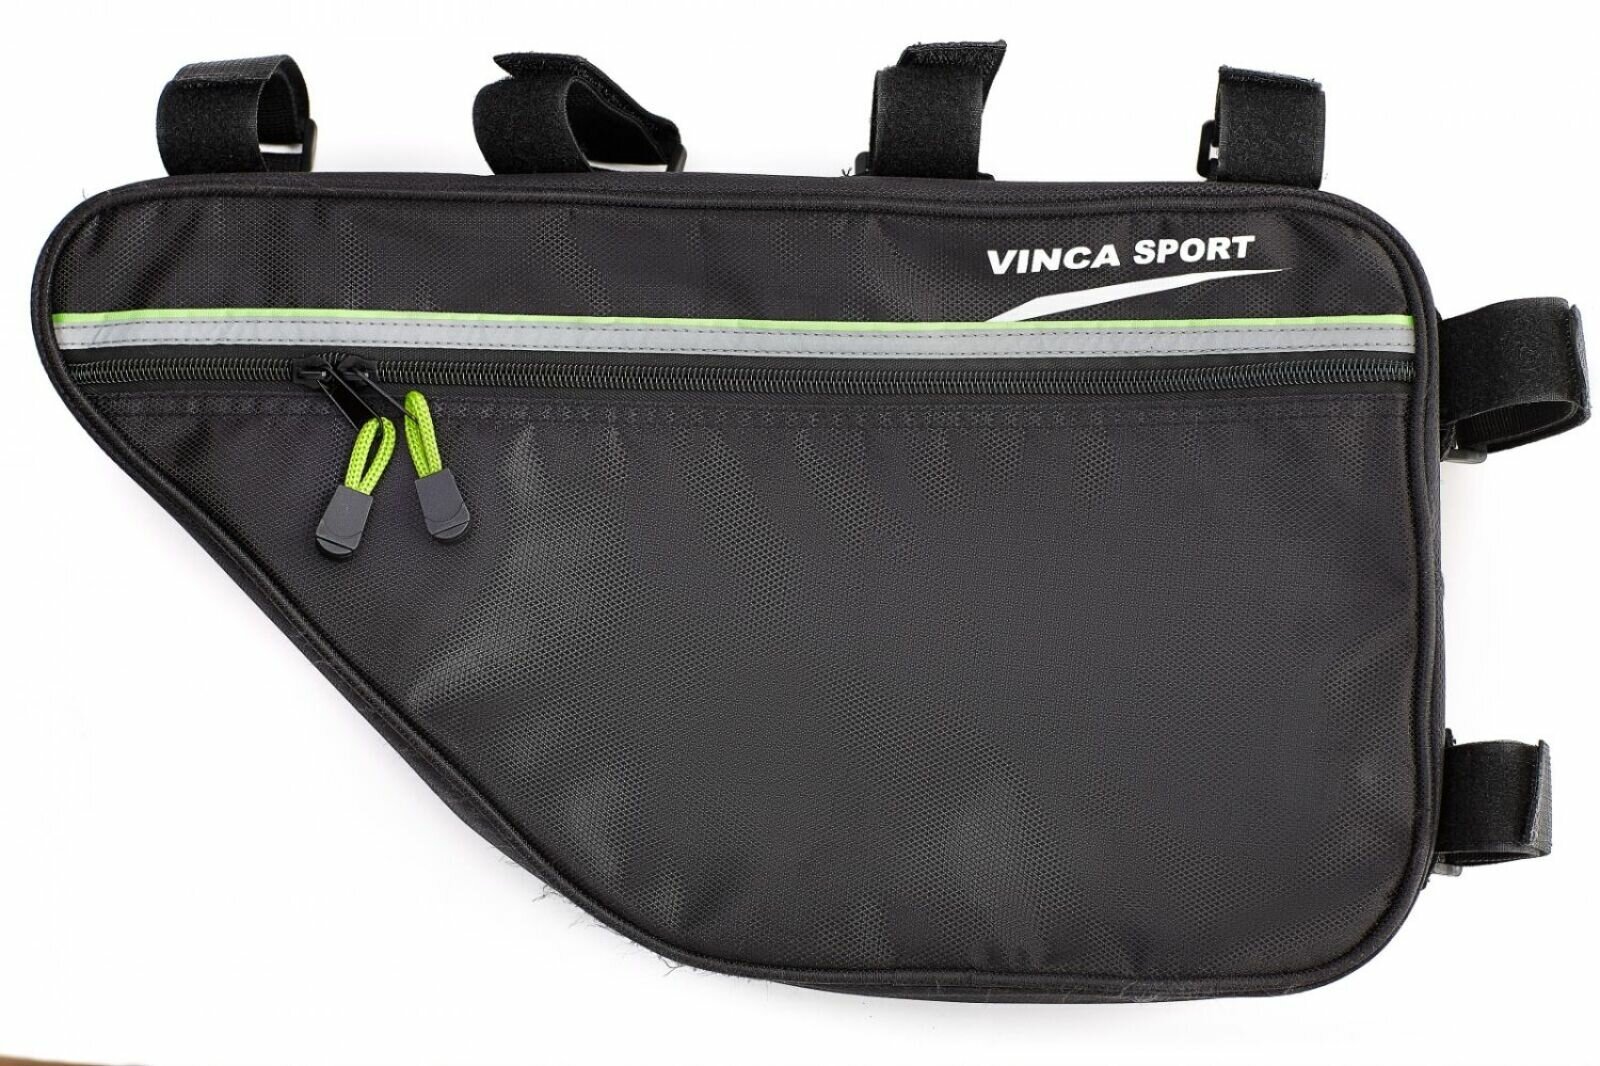 Велосумка Vinca Sport под раму FB05-4, зеленый